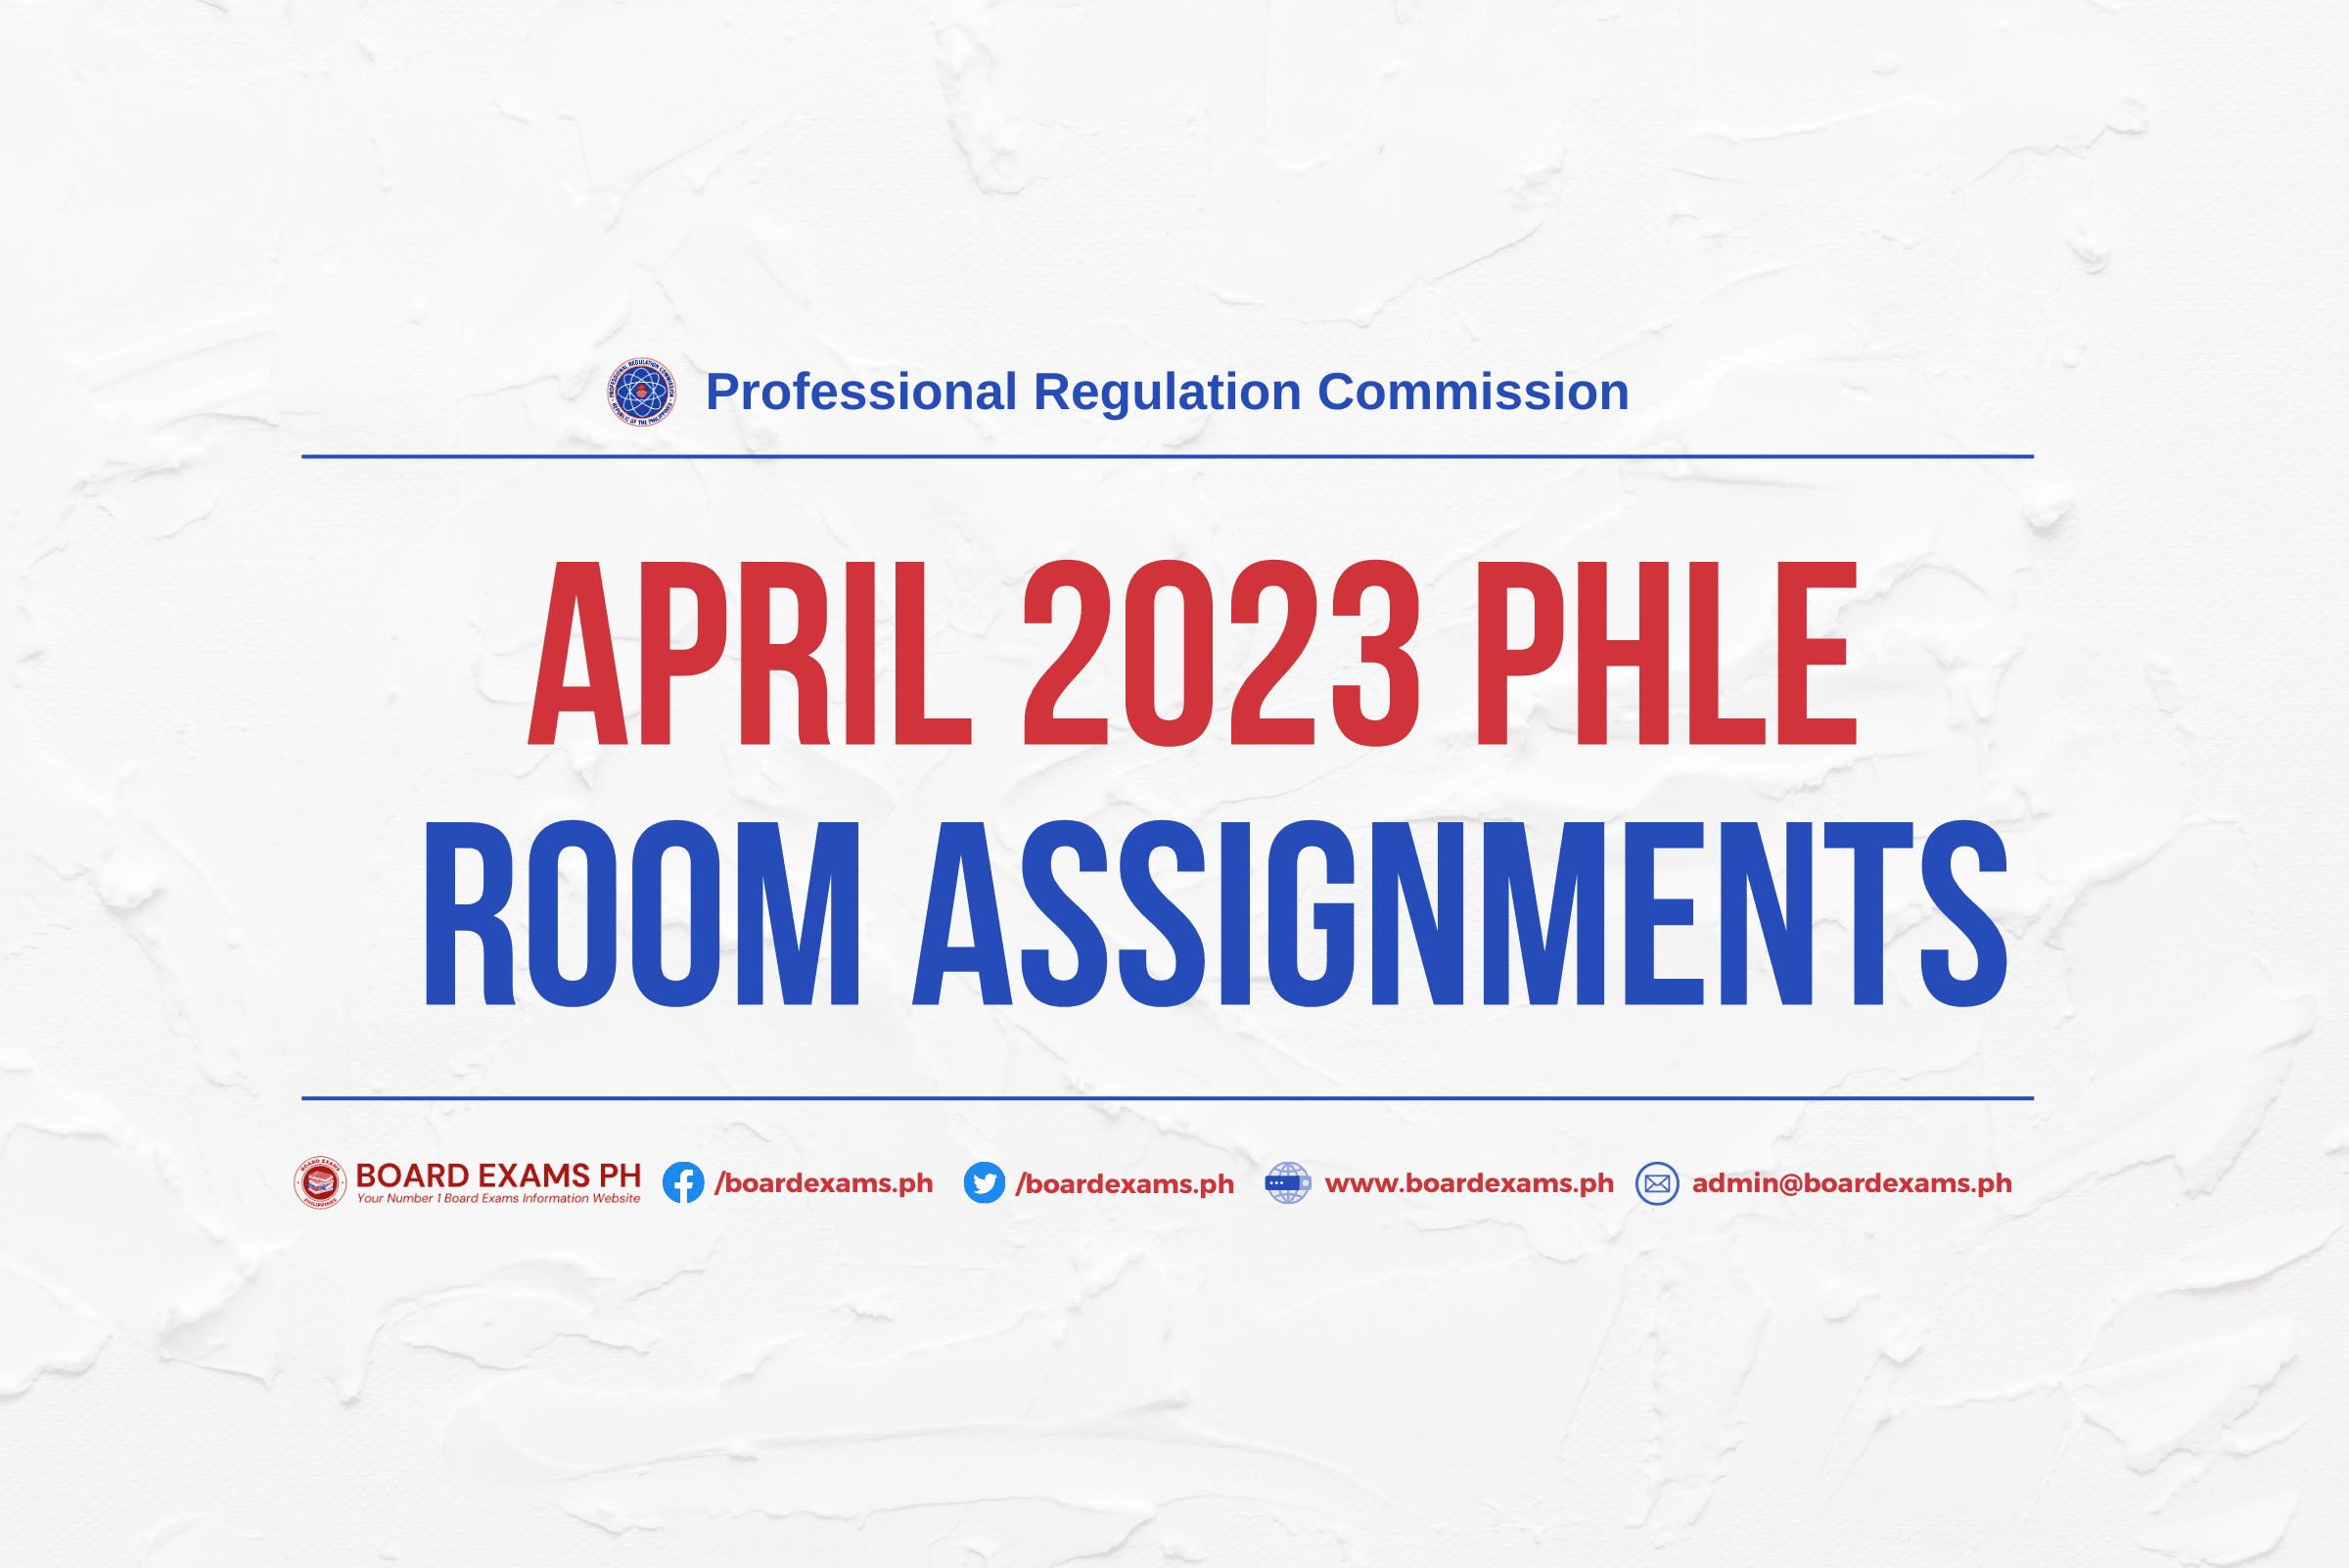 prc gov ph room assignment june 26 2022